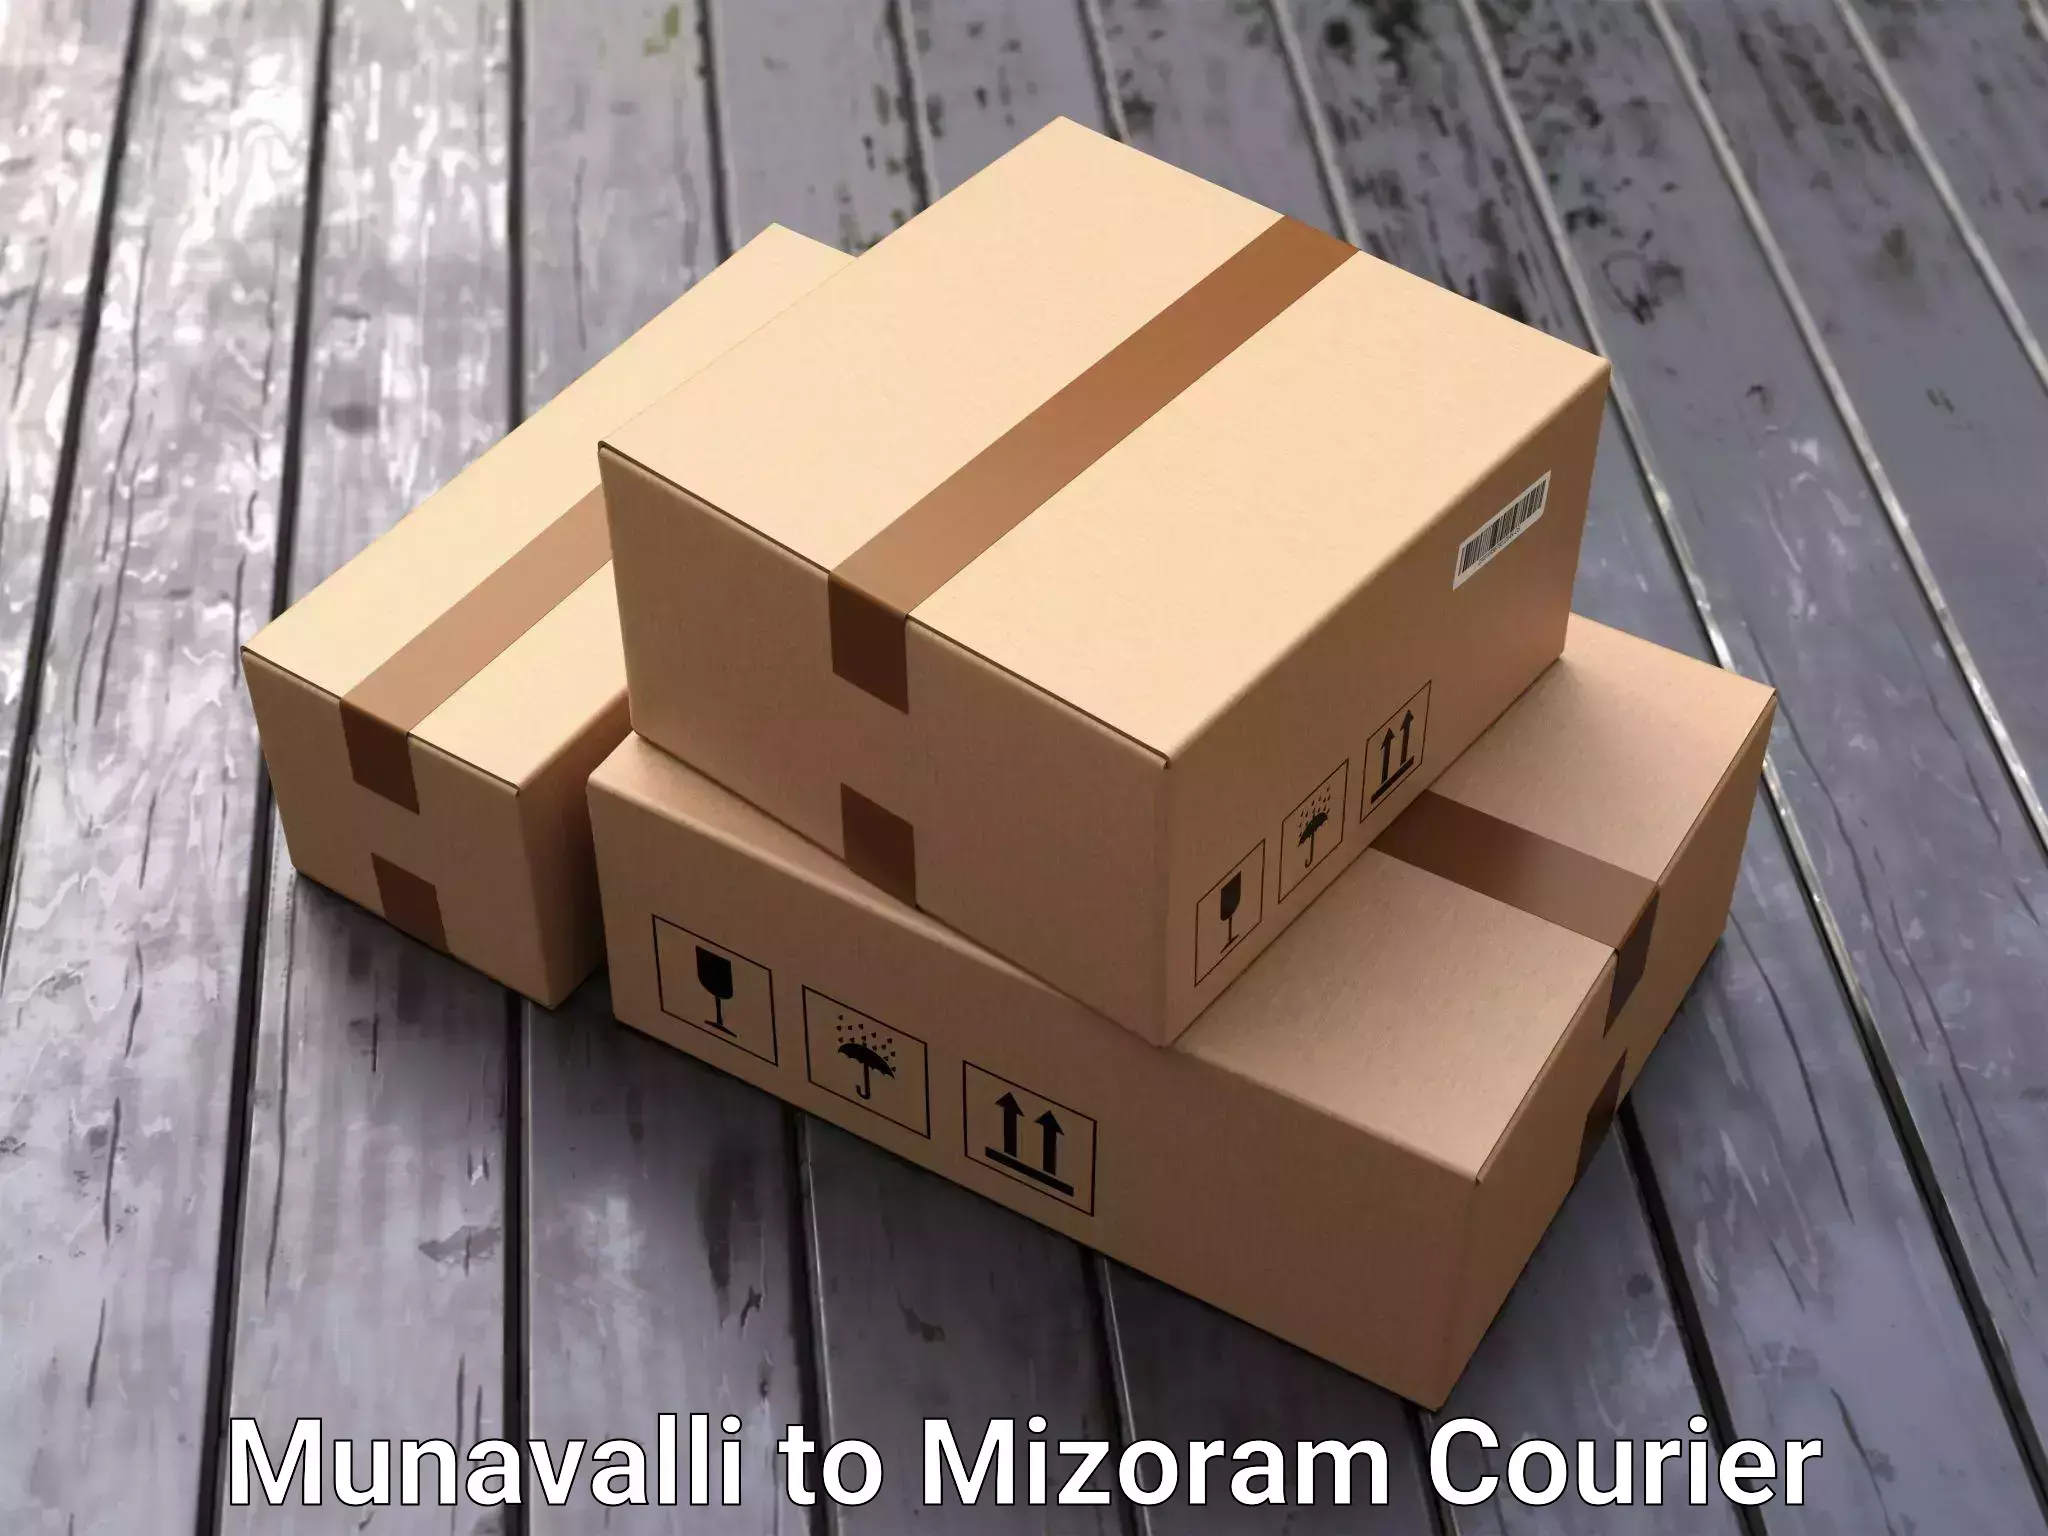 Home relocation experts Munavalli to Mizoram